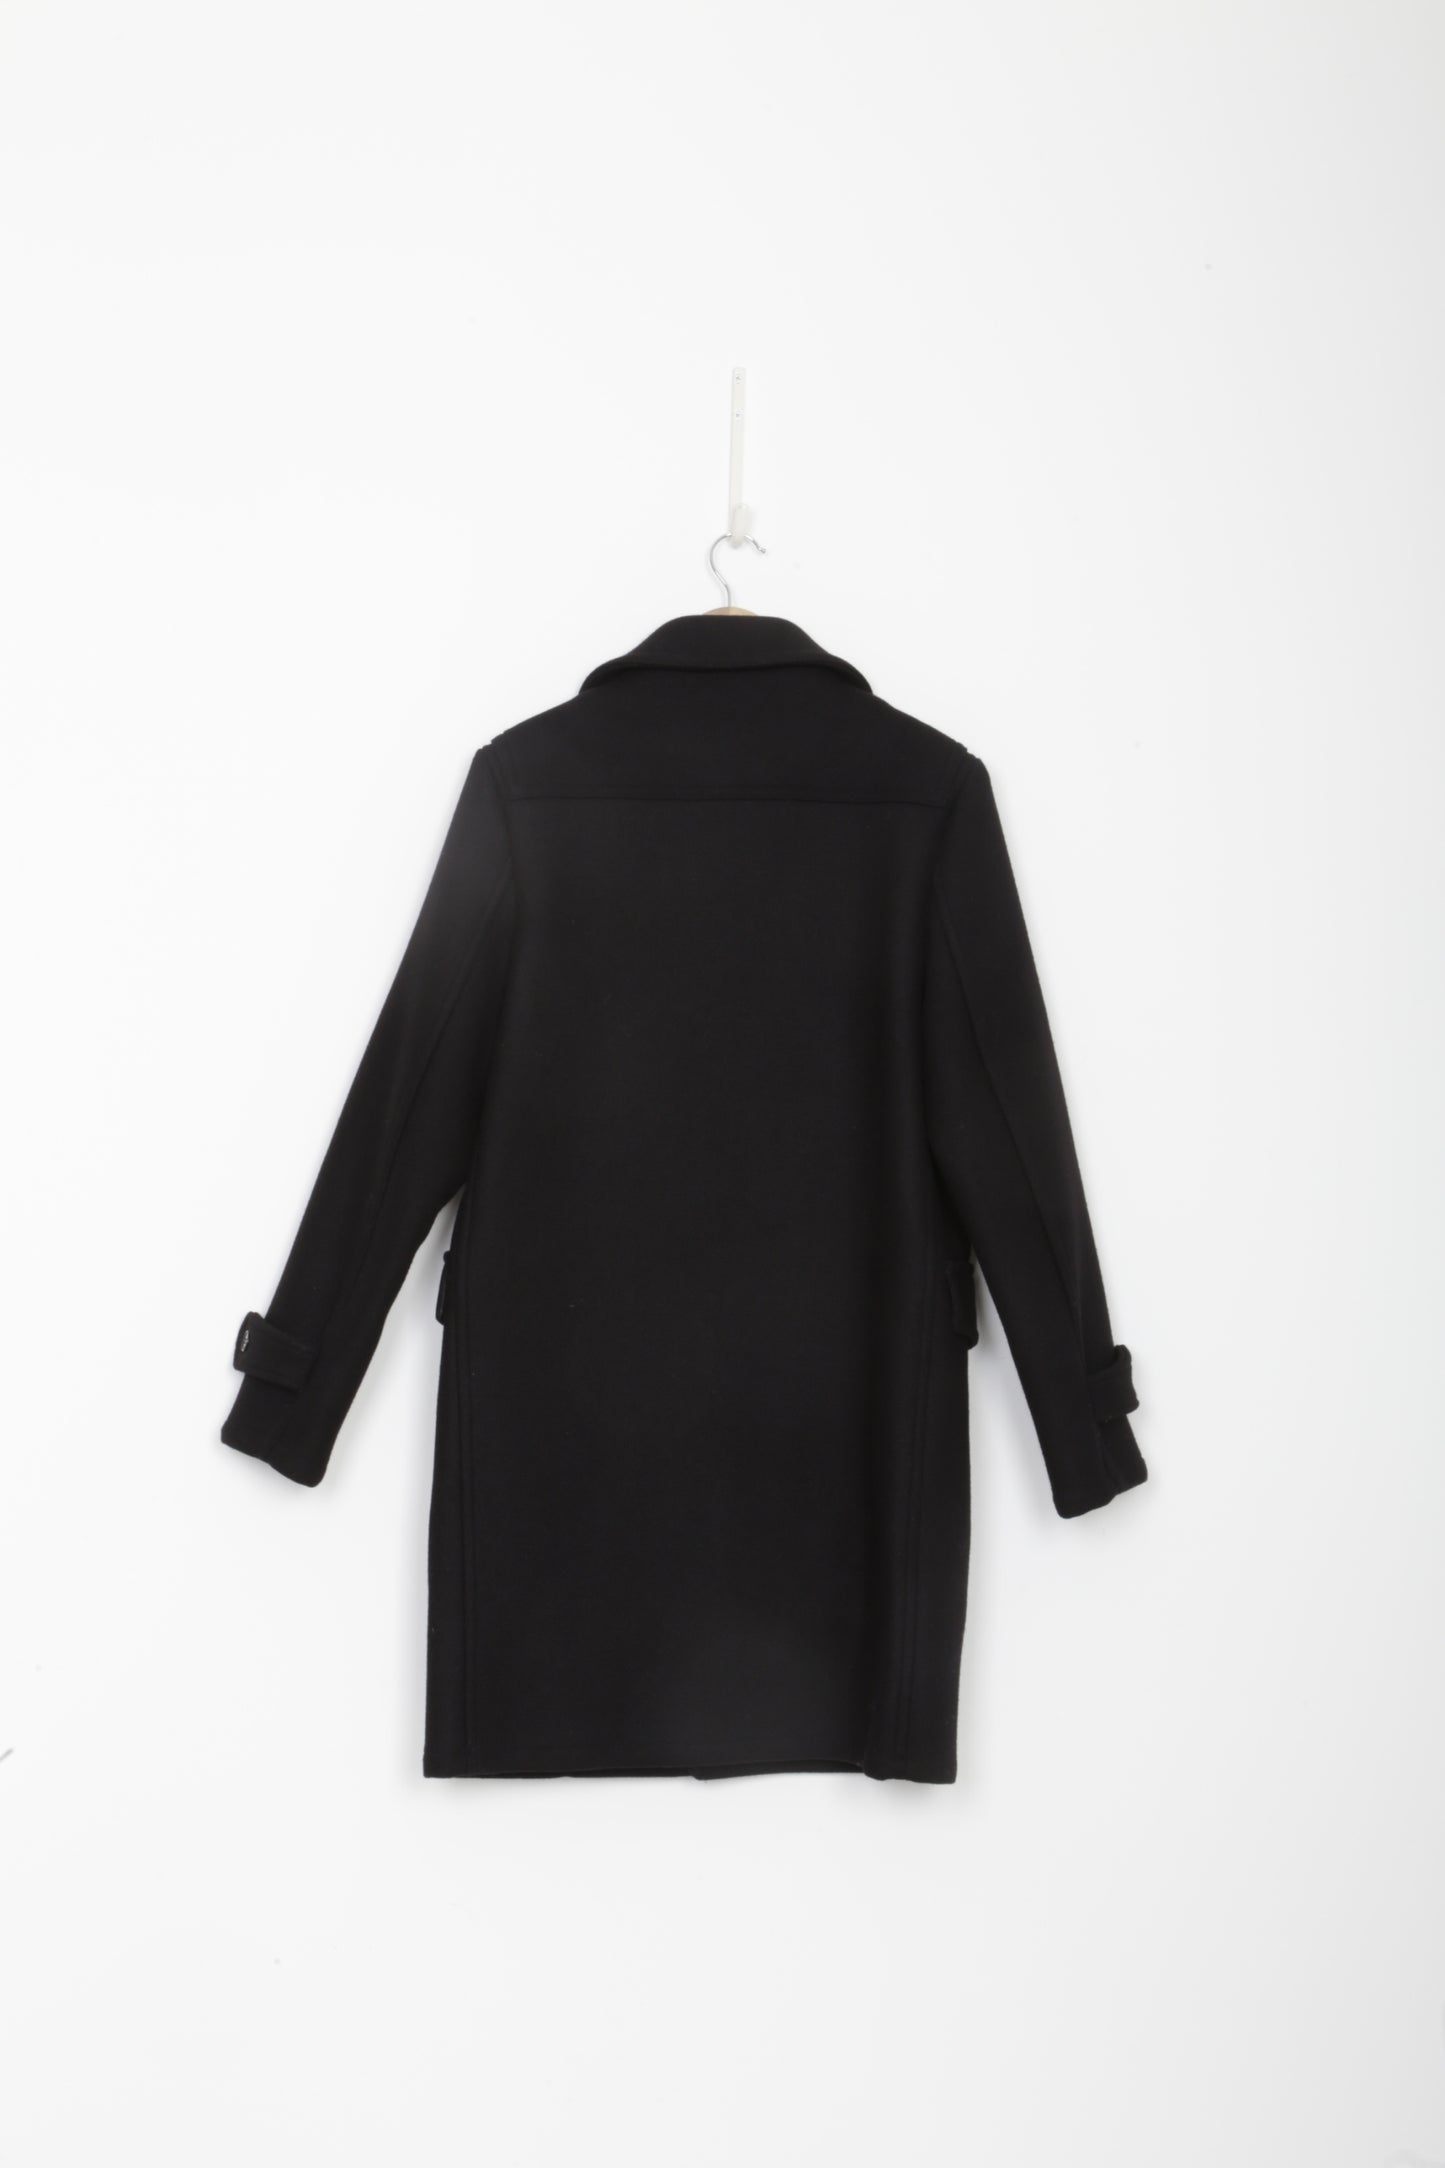 Saint Laurent Mens Black Coat Size M